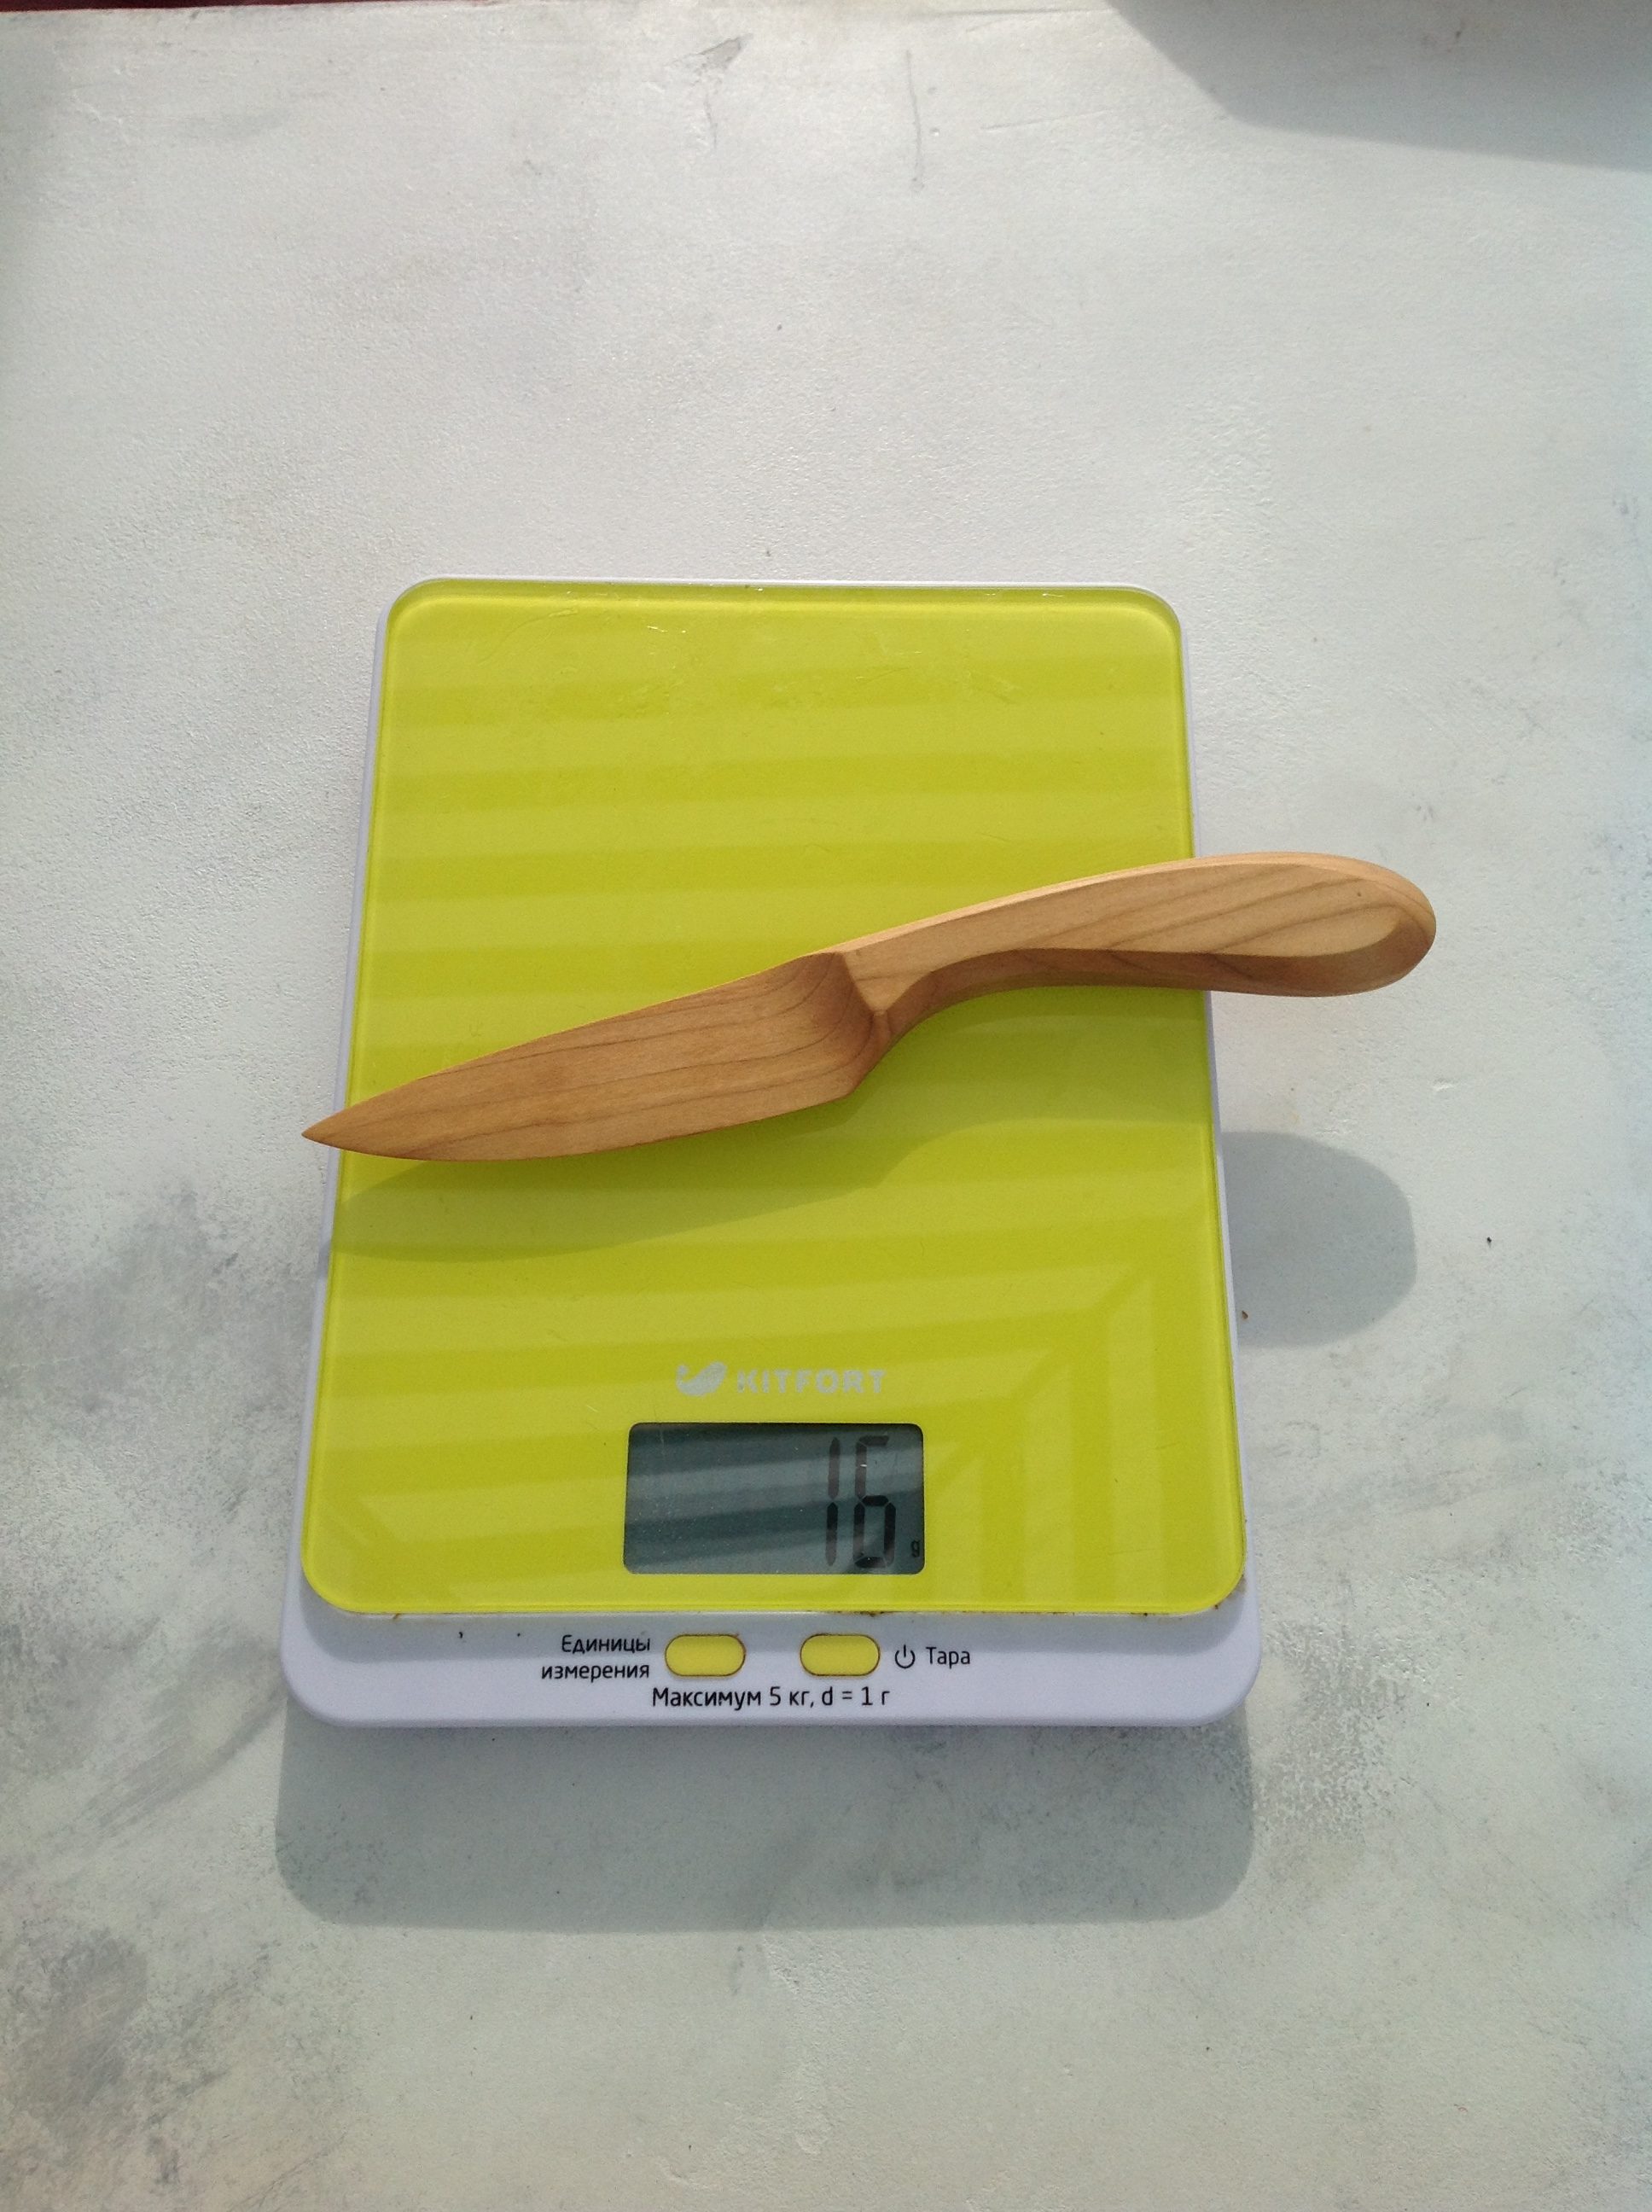 вес сувенирного деревянного ножа среднего